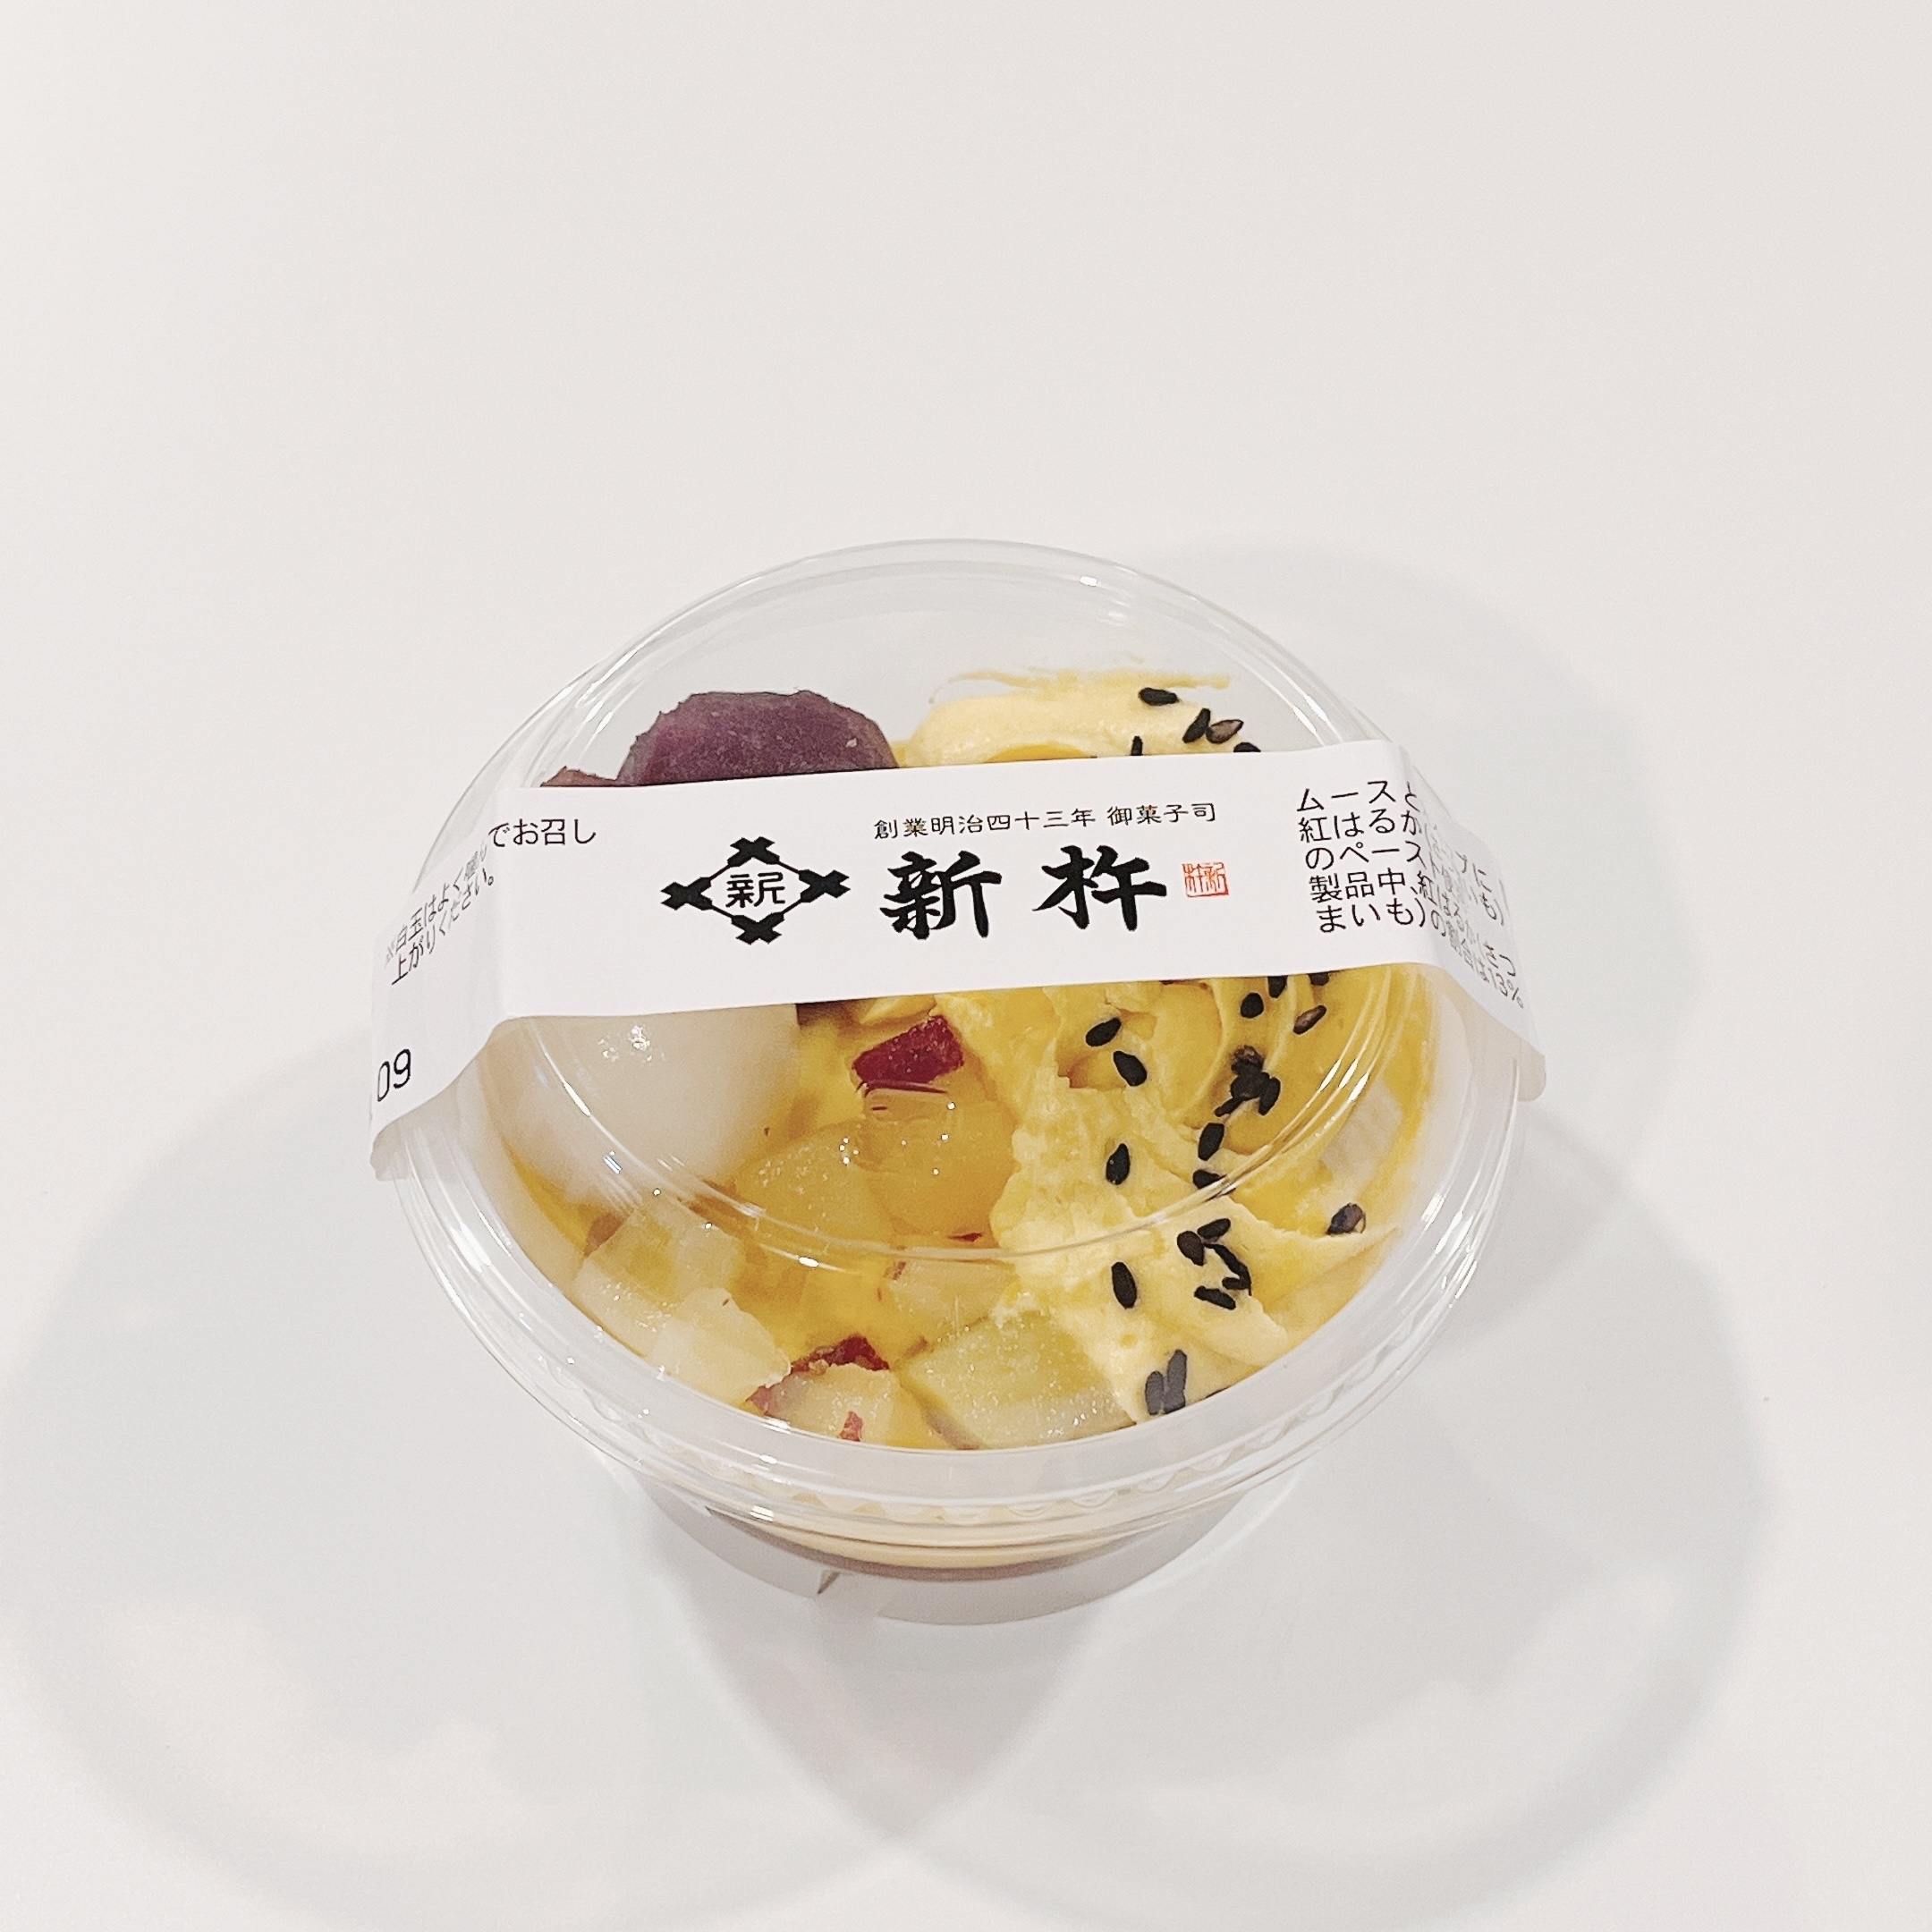 成城石井のオススメの商品「お芋づくしのパフェ〜紅はるか〜」